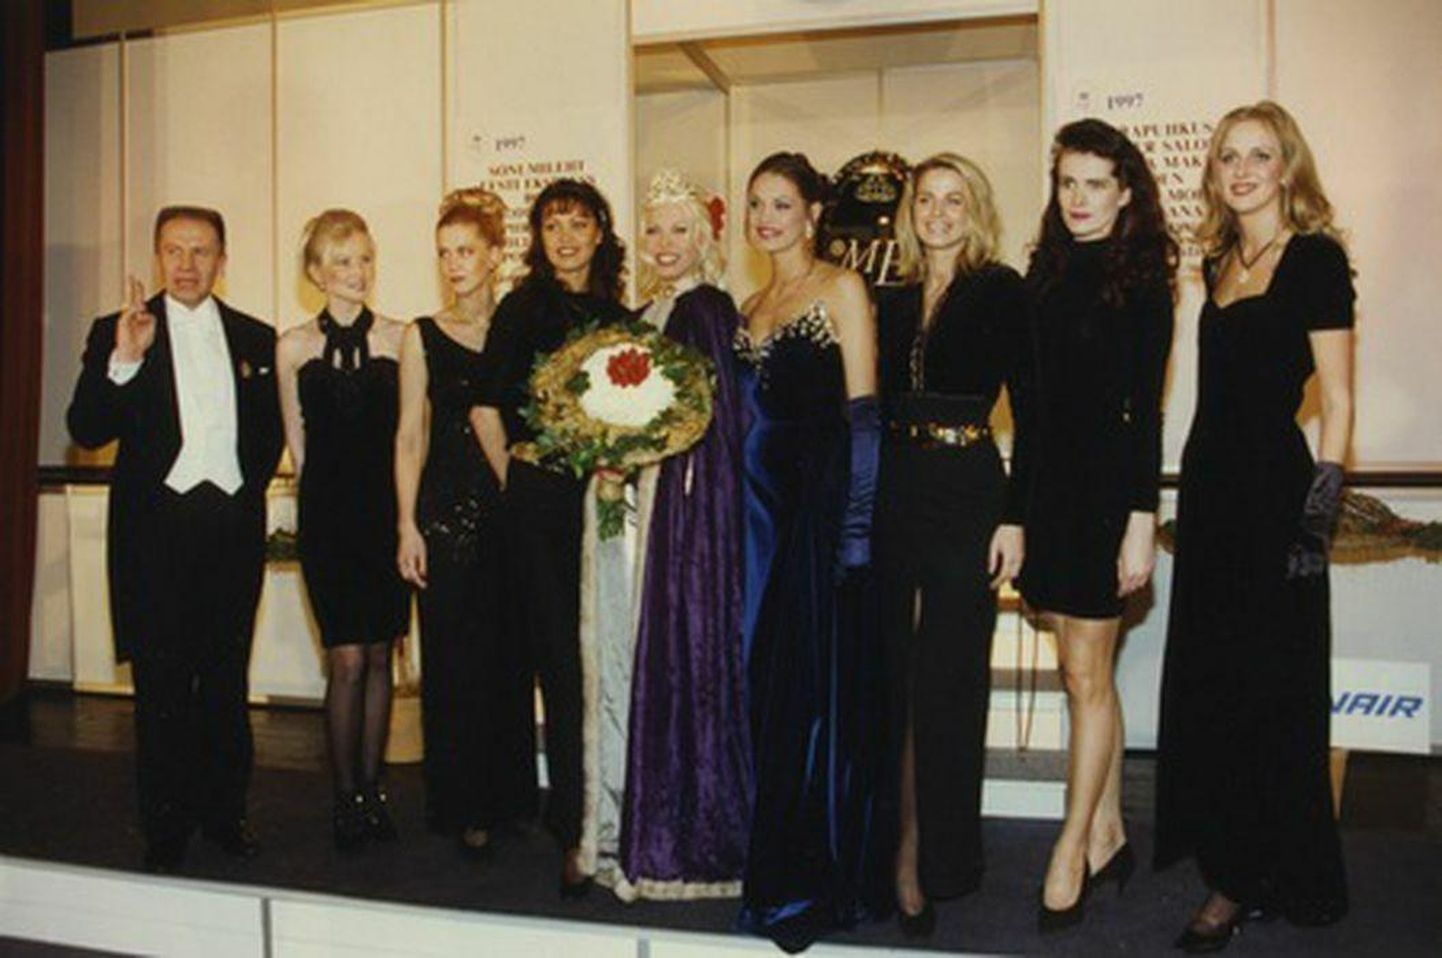 Miss Estonia 97 valimistel olid varasemad missid aukülalisteks. Alates vasakult Liis Tappo (1990), Heli Mets (1988), Enel Eha (1995), Kristiina Heinmets (1997), Helen Mahmastol (1996), Cathy Korju (1989), Erika Bauer (1991) ja Lilia Üksvärav (1993).